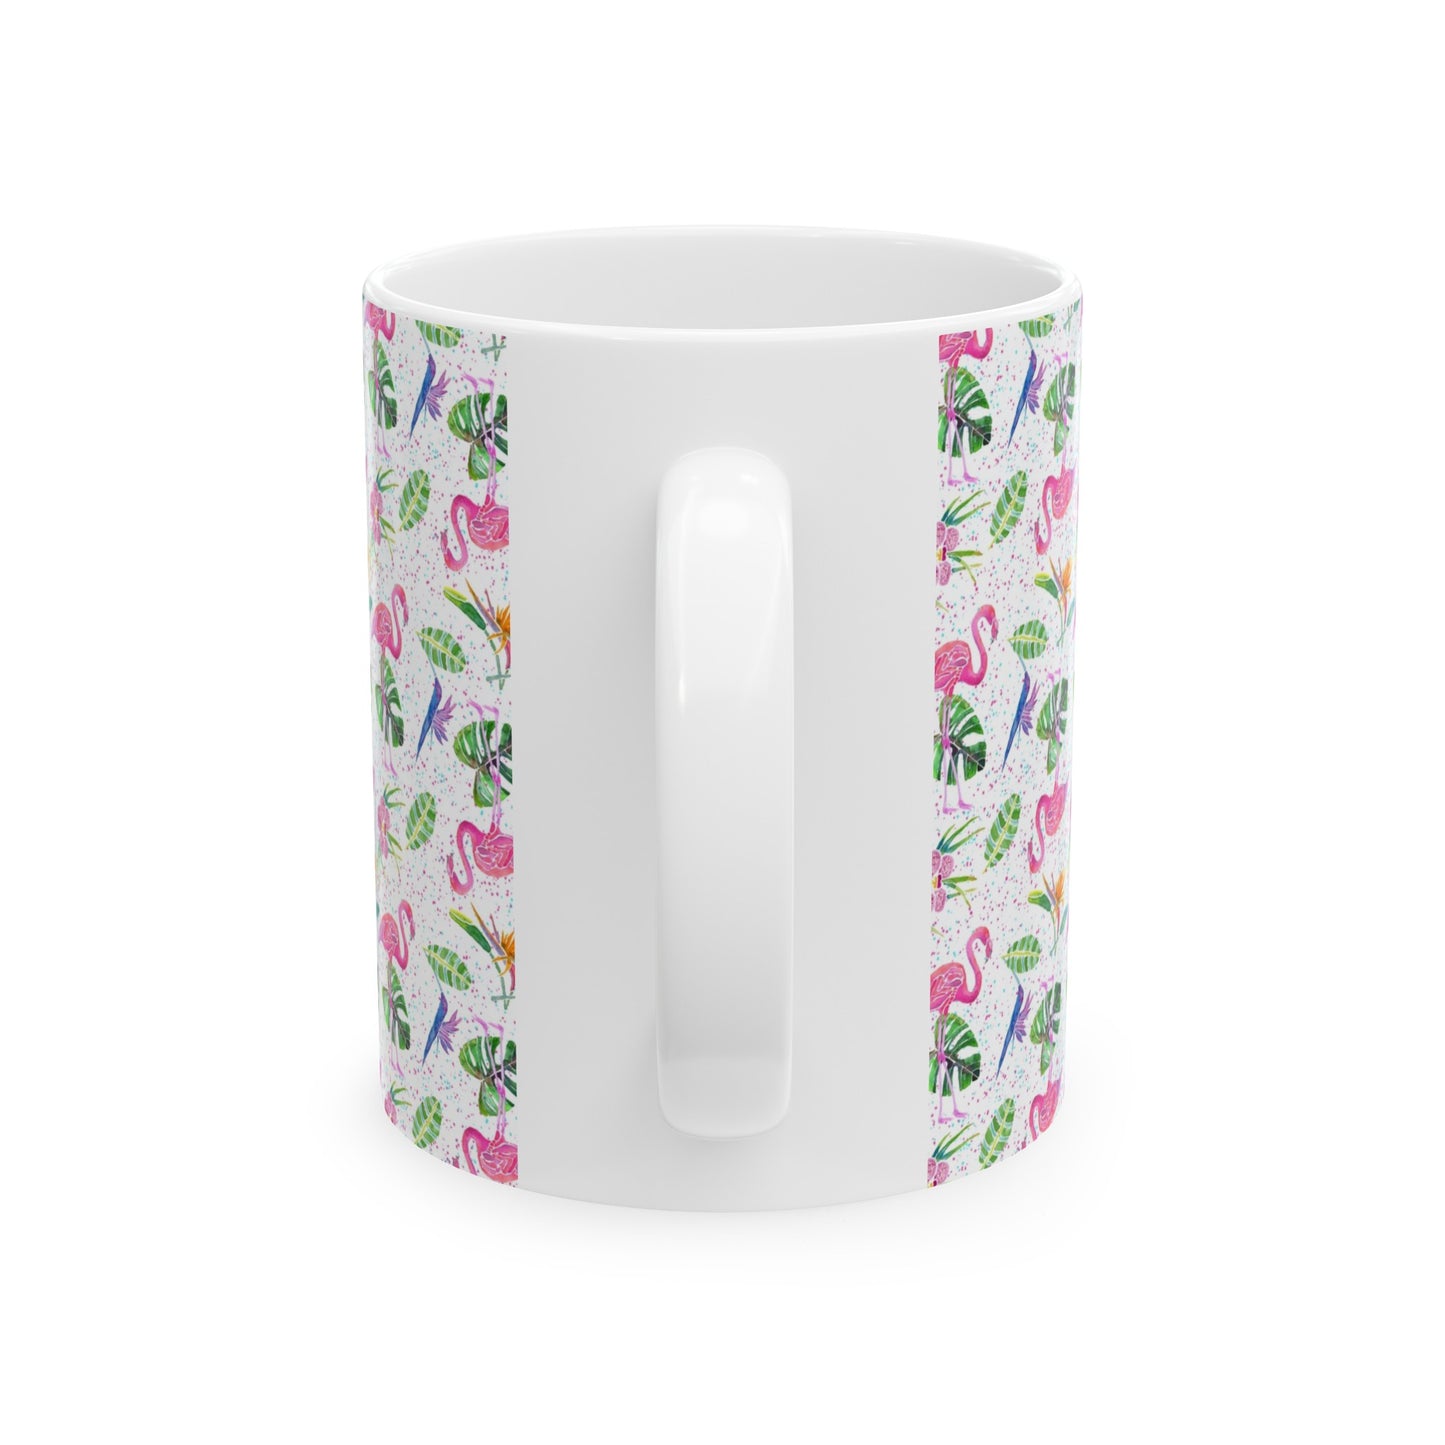 Flamingo Party Mug Ceramic Mug 11oz